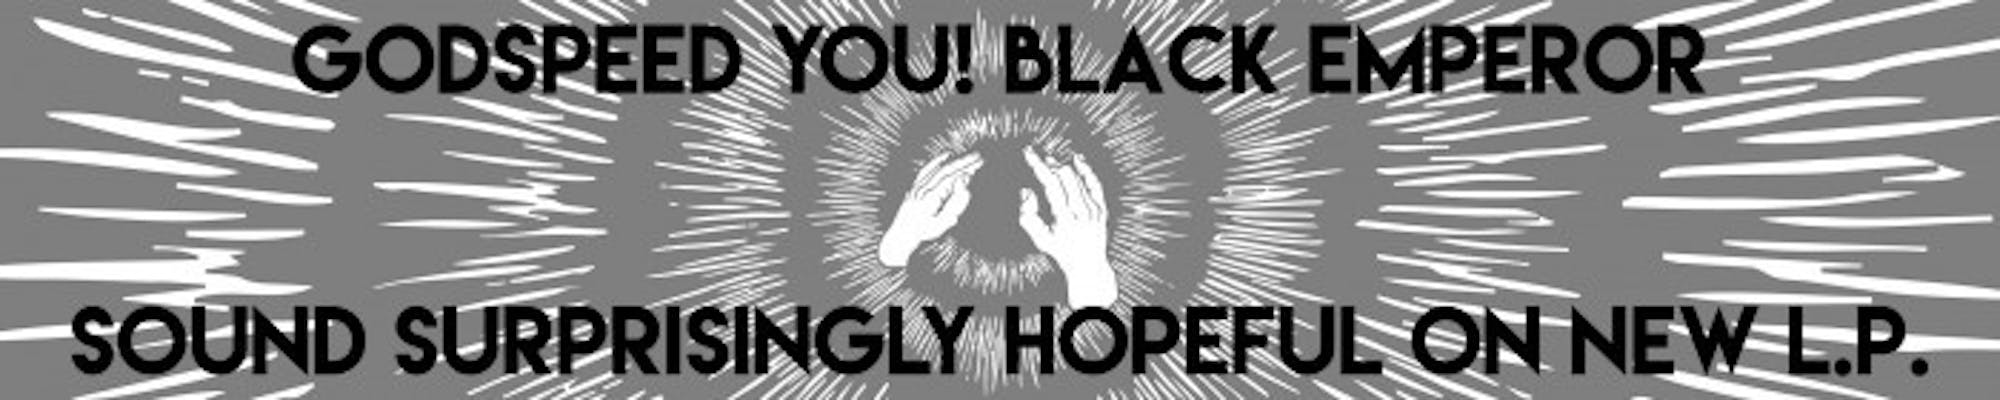 Godspeed You! Black Emperor Banner